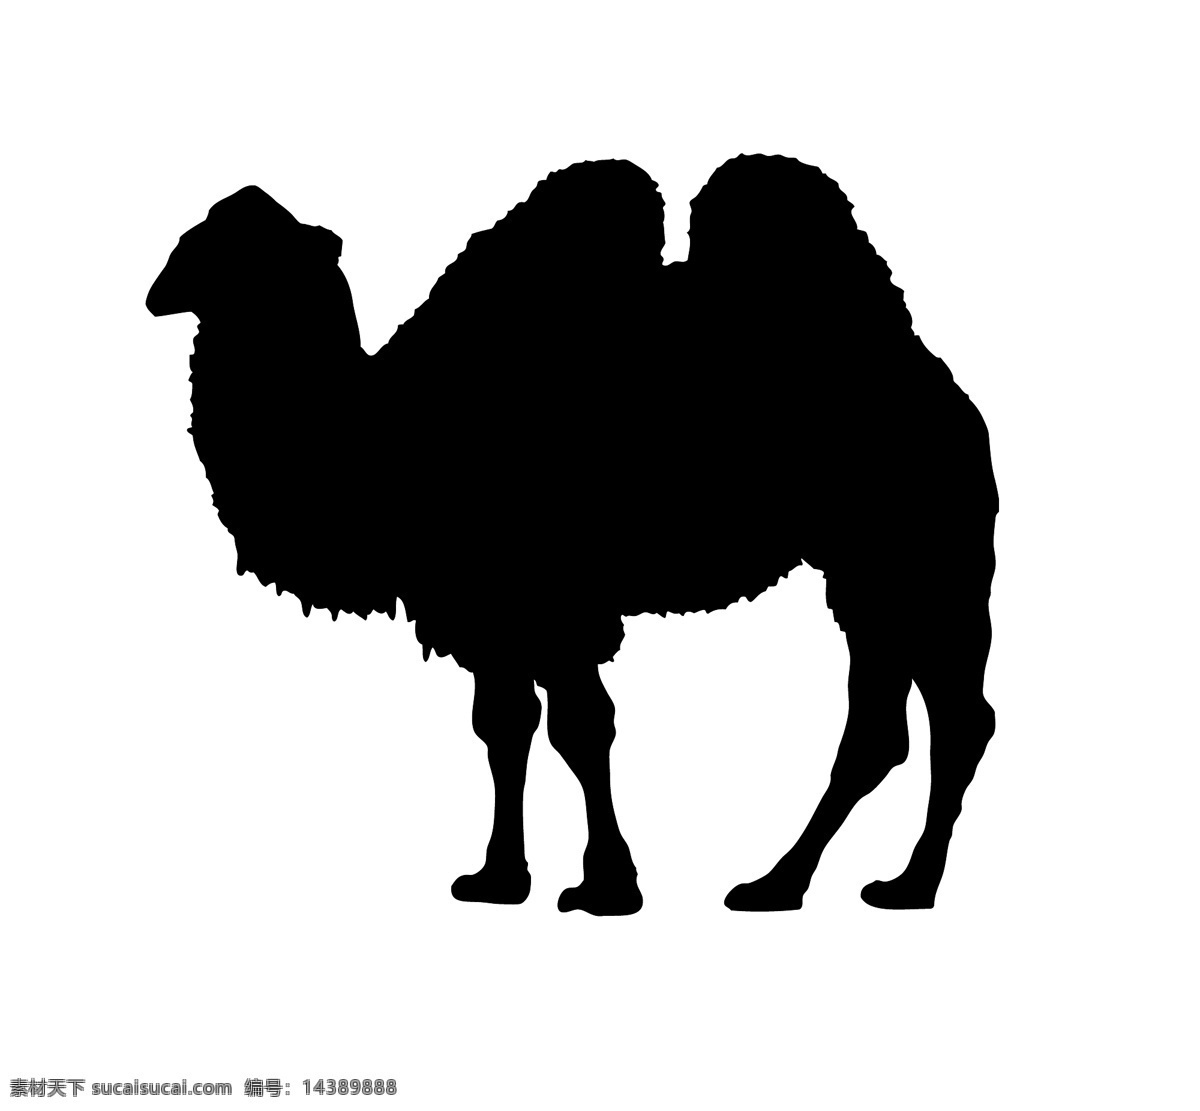 野生动物系列 骆驼剪影 骆驼 矢量图 动物世界 大自然 卡通 剪影 户外 野外 标本 图标 标识 标志 动物园 猛兽 丛林 草原 荒野 旷野 camel 双峰骆驼 沙漠骆驼 矢量 动物 昆虫类 生物世界 昆虫